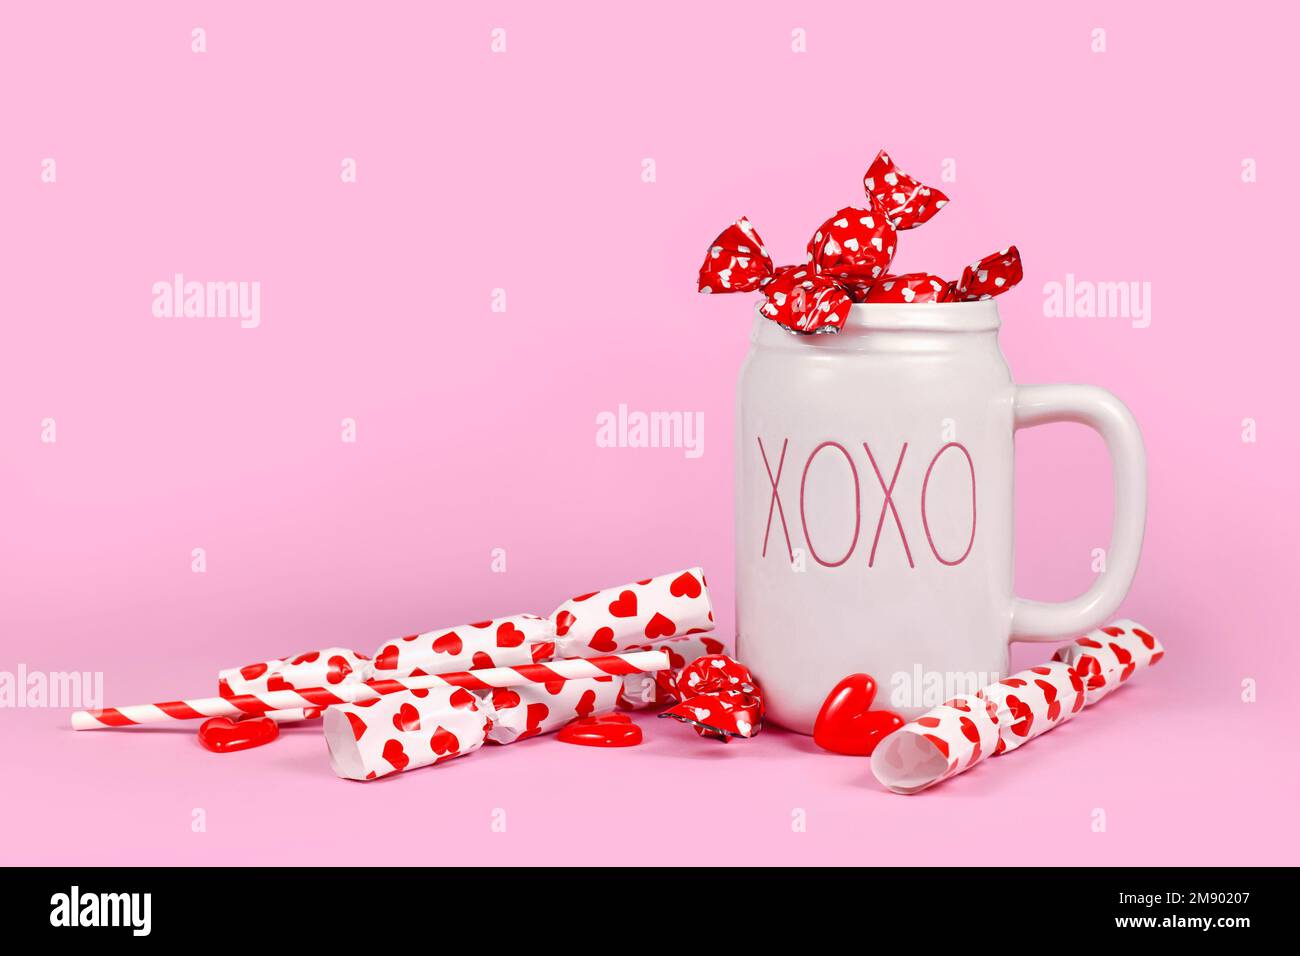 Addobbo grazioso di San Valentino con cuori, caramelle rosse e tazza XOXO su sfondo rosa Foto Stock